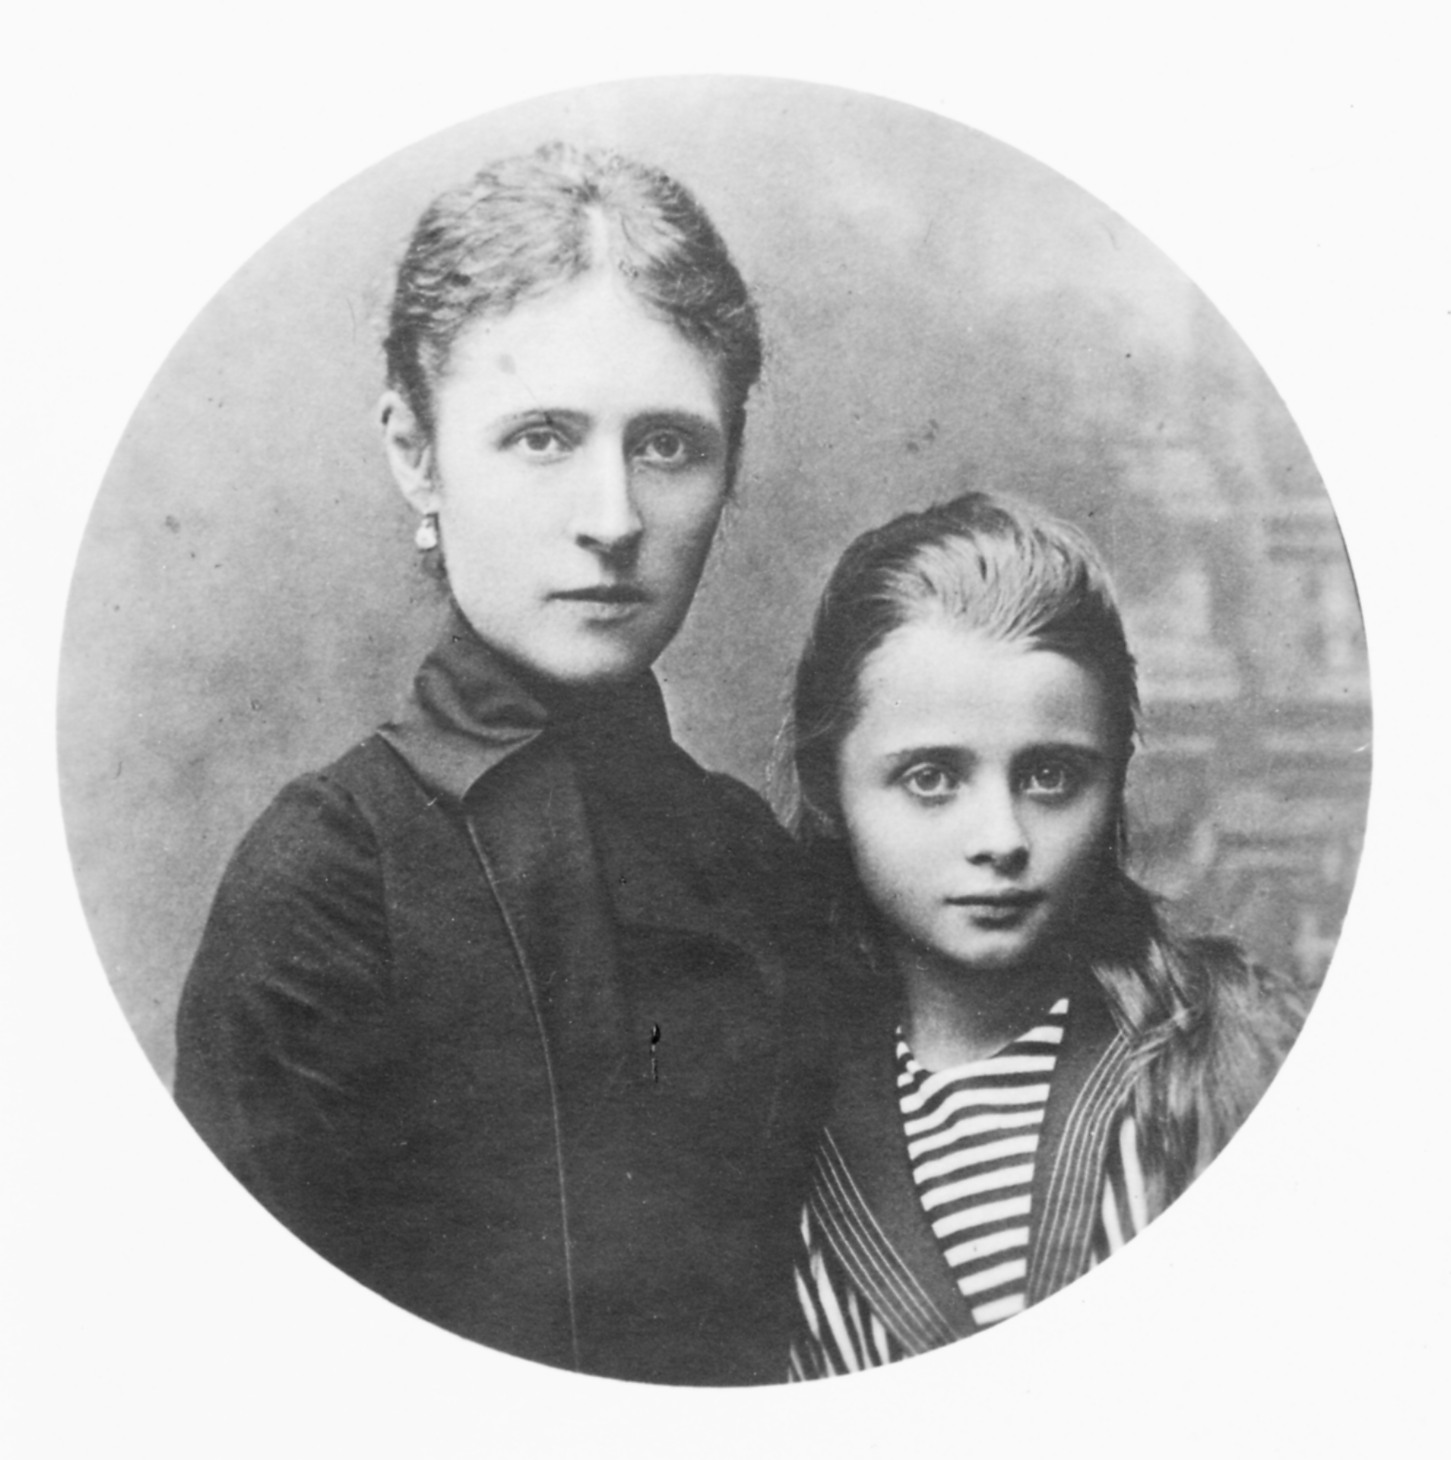 Fotografia archiwalna, czarno-biała, wykonana około 1885 roku, przedstawia Marię Potocką, późniejszą Adamową Zamoyską, z matką – Janiną Potocką. Postacie w ujęciu do pasa. Po lewej kobieta o ciemnych, gładko zaczesanych i spiętych włosach, o twarzy pociągłej, szczupłej, ubrana w ciemny strój. Obok niej dziewczynka, o ciemnych włosach, okrągłej twarzy, ubrana w bluzkę o marynarskim kroju.